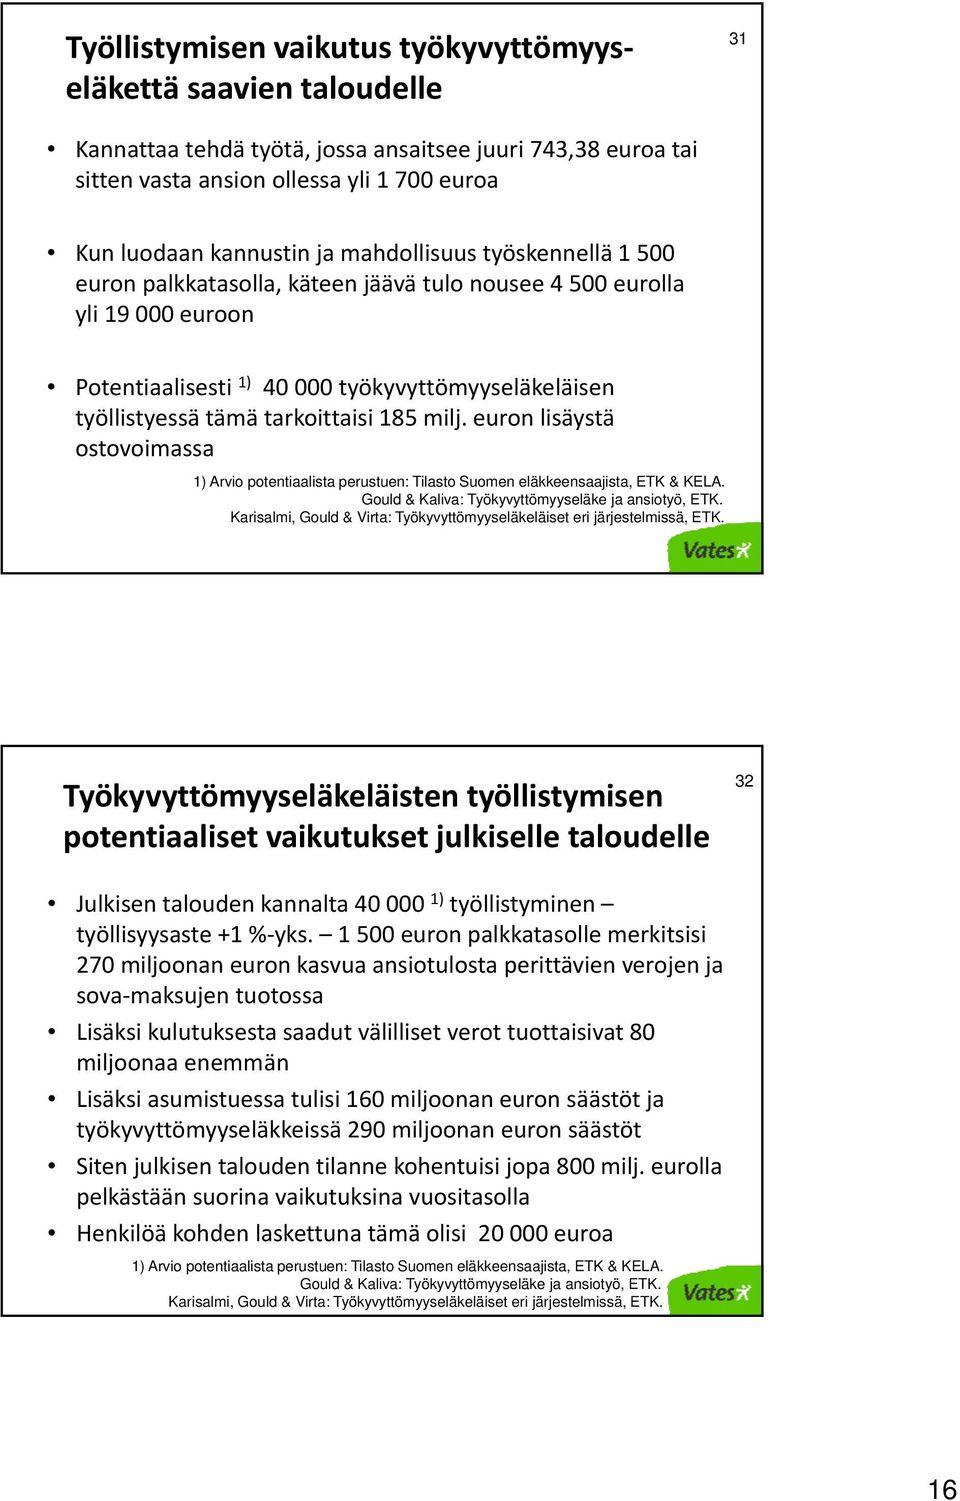 milj. euron lisäystä ostovoimassa 1) Arvio potentiaalista perustuen: Tilasto Suomen eläkkeensaajista, ETK & KELA. Gould & Kaliva: Työkyvyttömyyseläke ja ansiotyö, ETK.